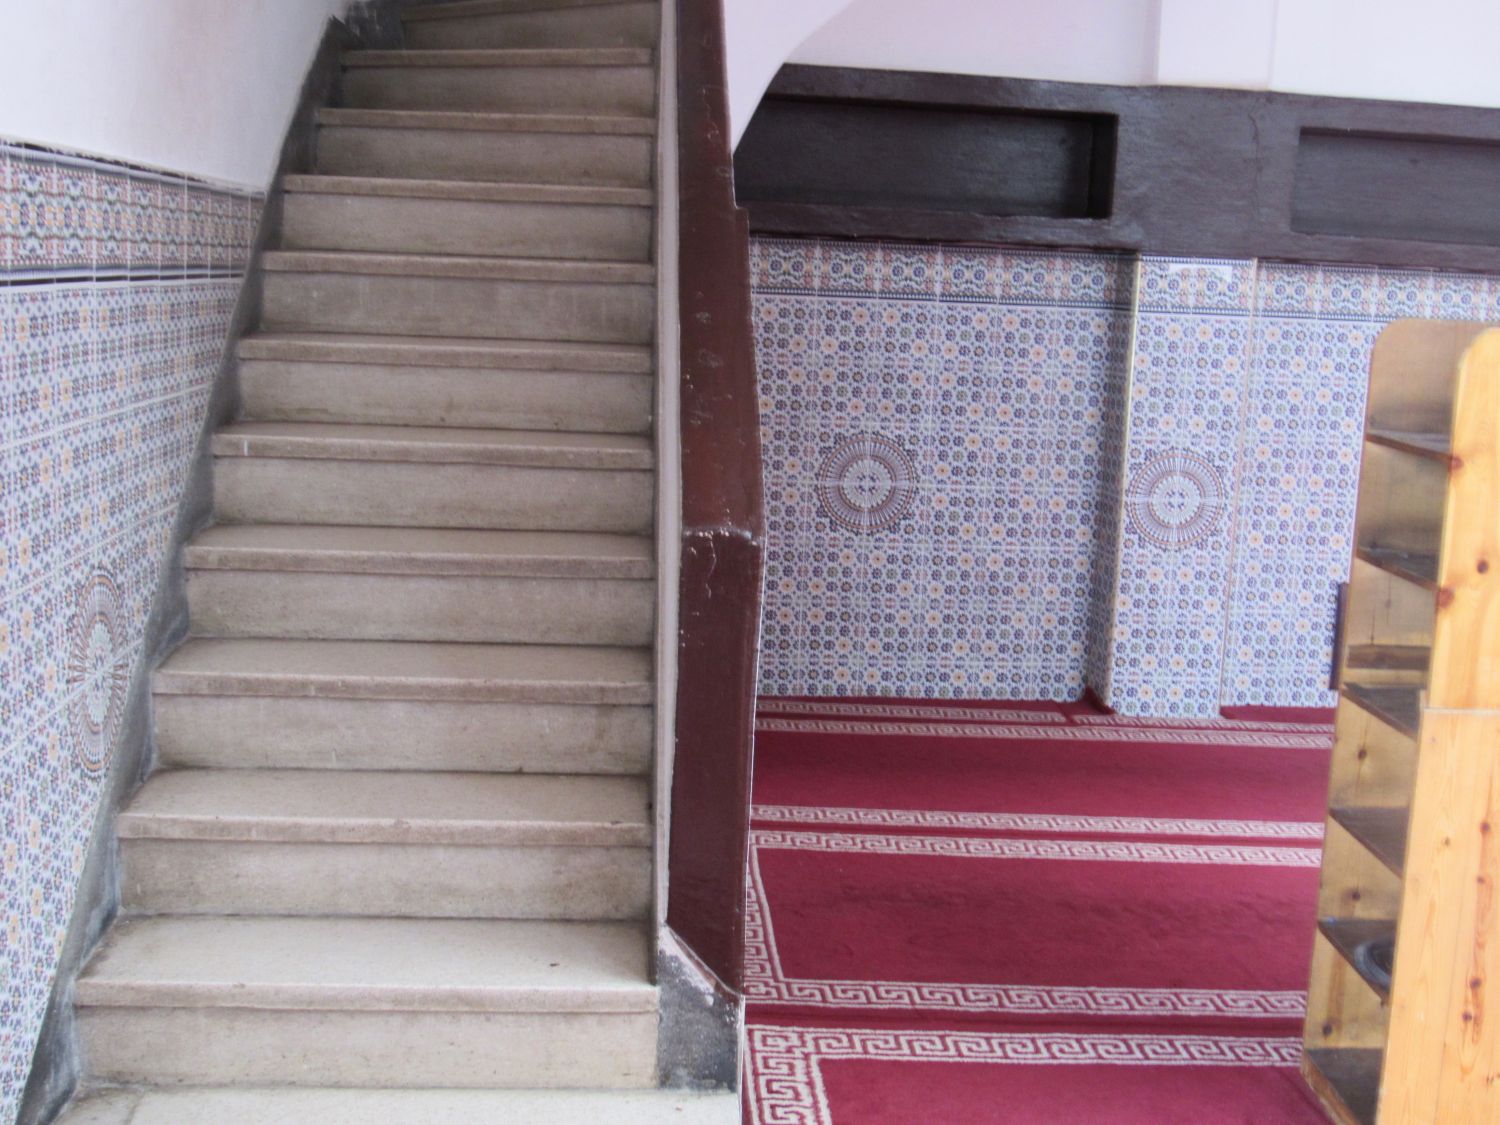 Mosquée El Mellah - Interior view, stairwell.